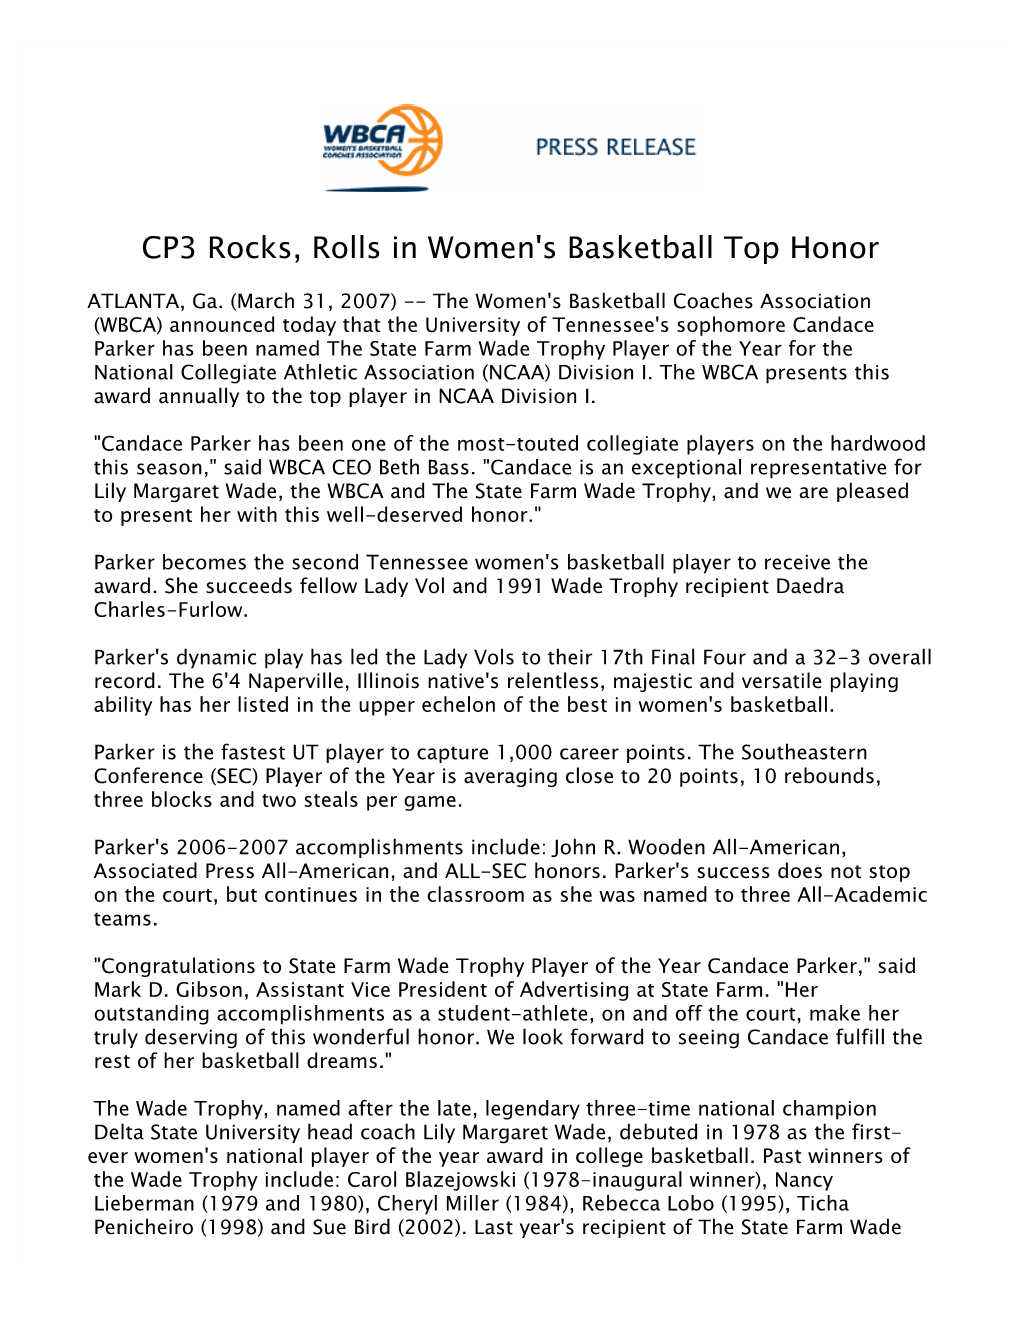 CP3 Rocks, Rolls in Women's Basketball Top Honor 2006-07